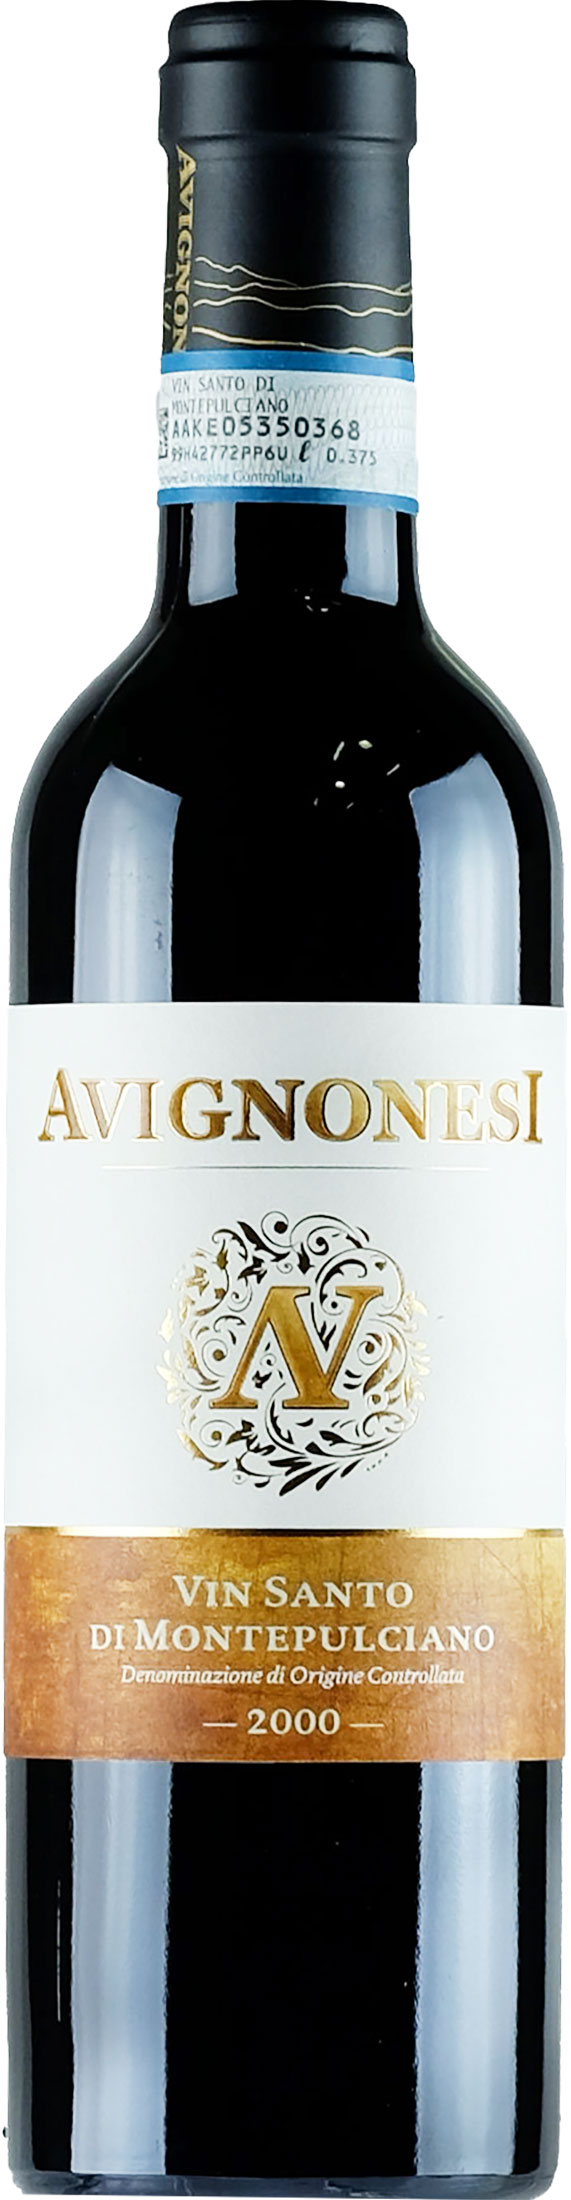 Avignonesi Vin Santo 0.375L 2000